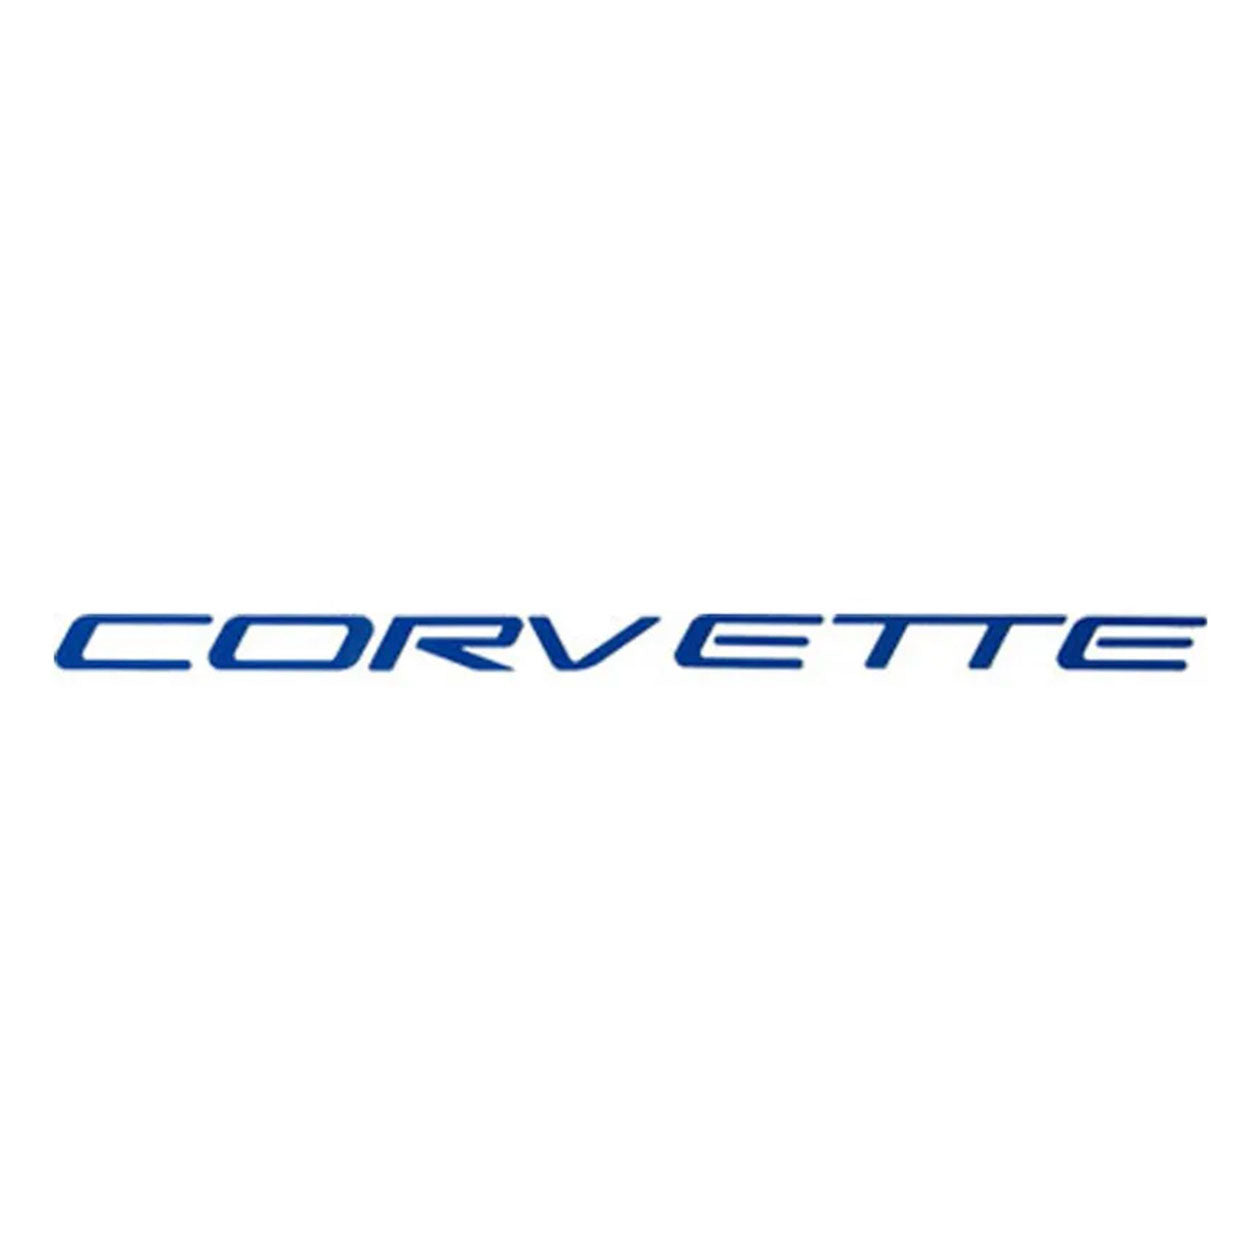 C5 Corvette Front & Rear Corvette Lettering Kit - Acrylic Gloss